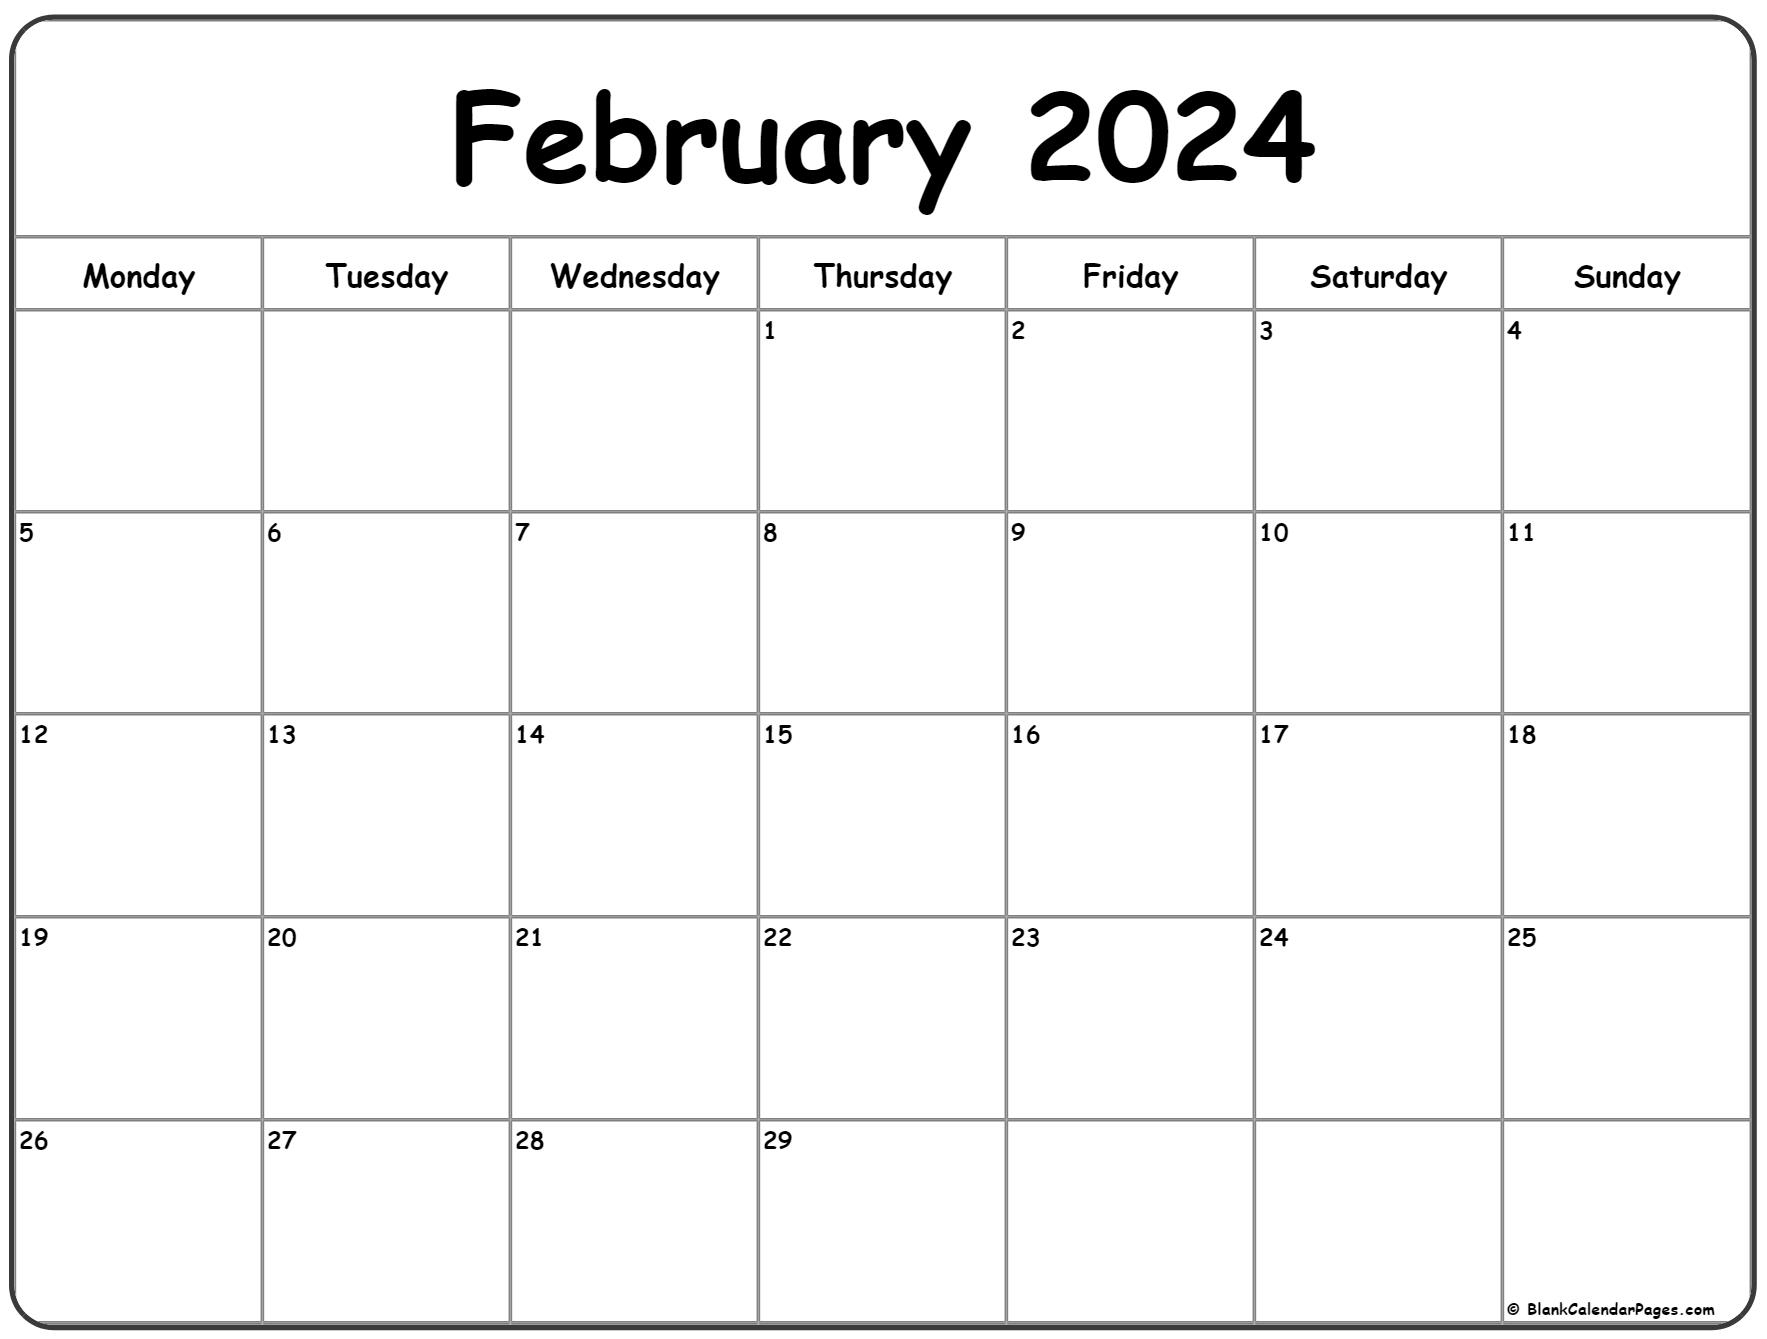 February 2024 Monday Calendar | Monday To Sunday for Calendar 2024 Printable February